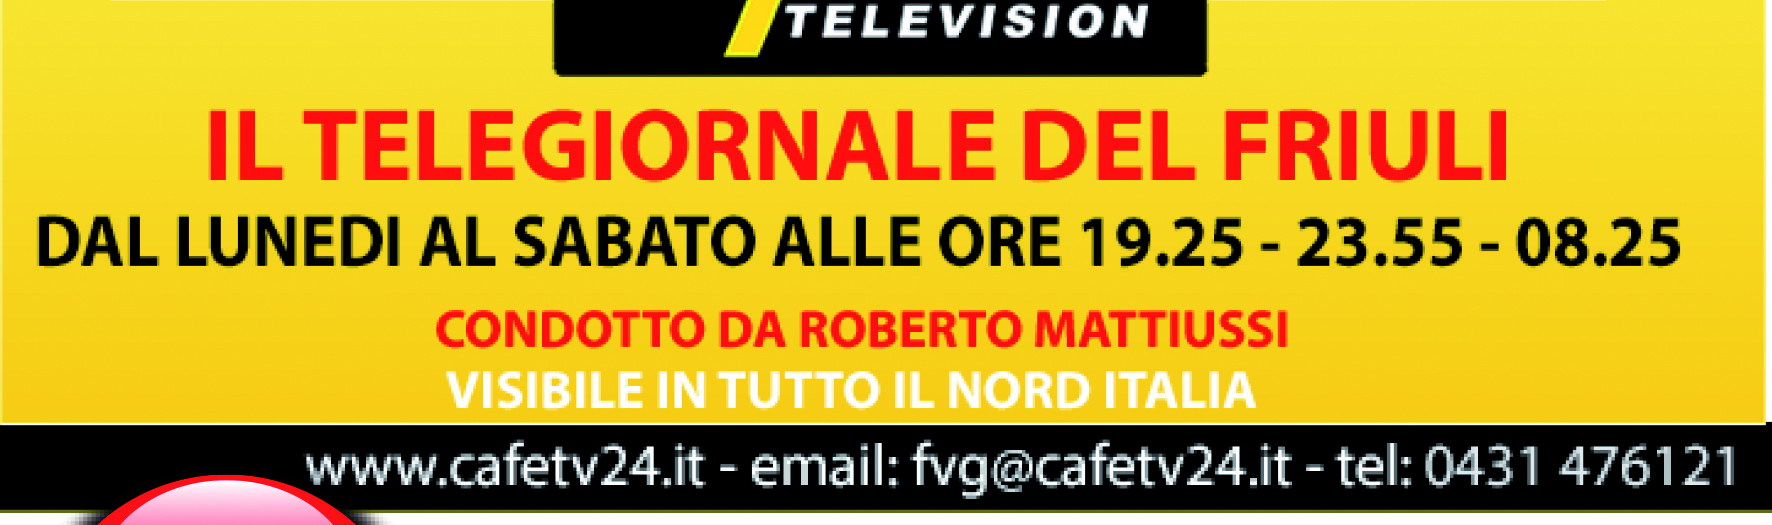 IDEANDO PUBBLICITA' - volantino CANALE TV CAFE' 24 TELEVISION